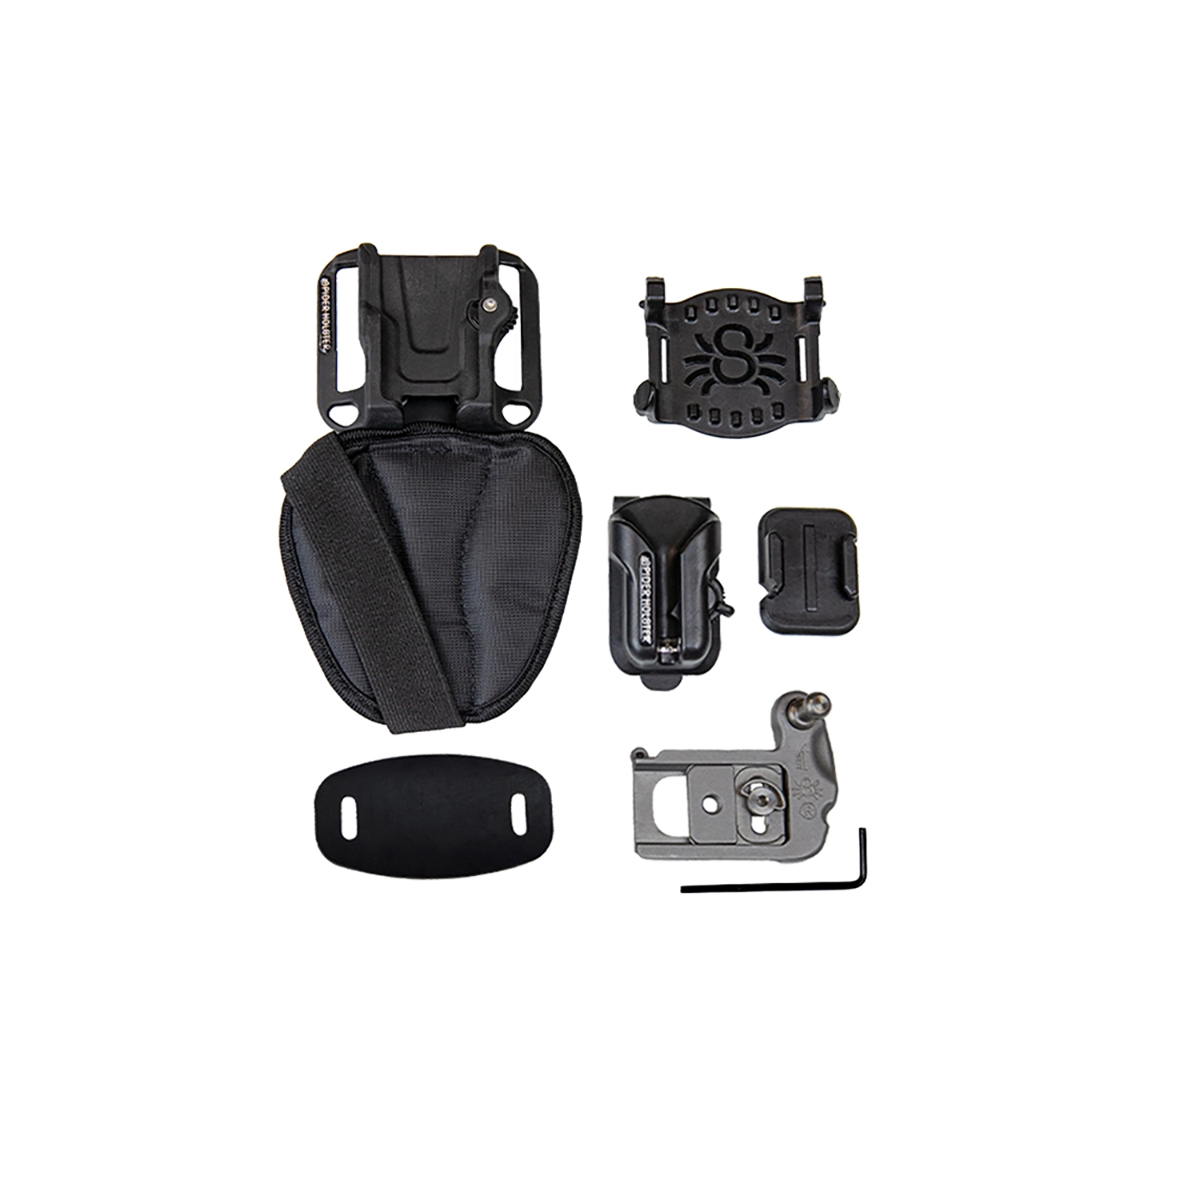 Spider-X Backpacker Kit